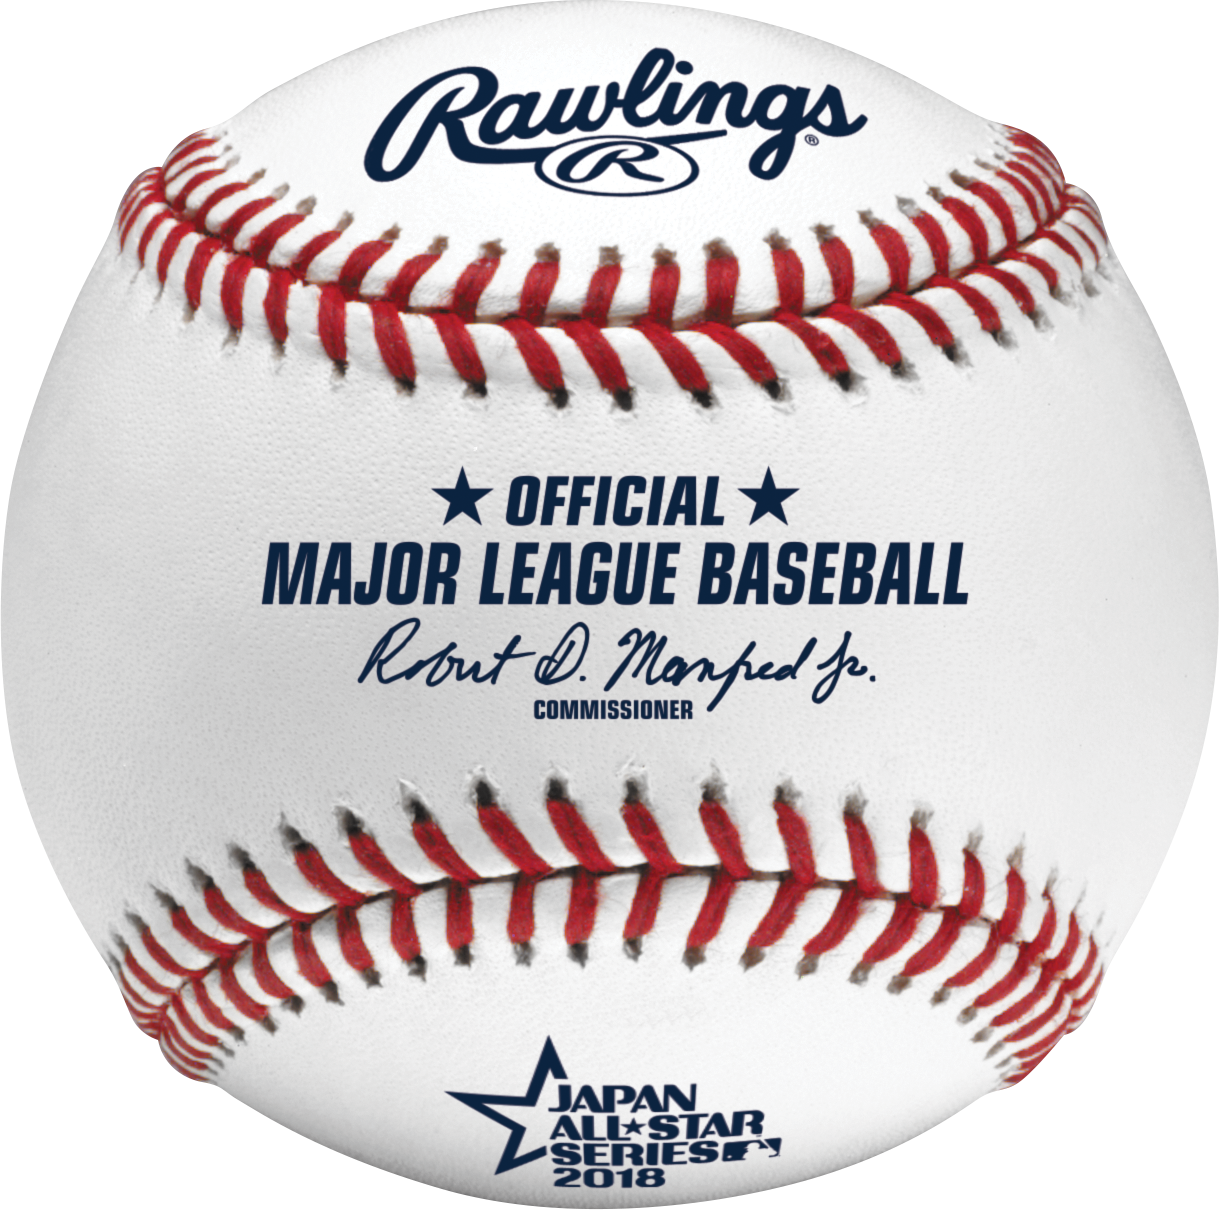 18日米野球 Mlb公式試合球 レプリカ球 が発売決定 ローリングスジャパン合同会社のプレスリリース